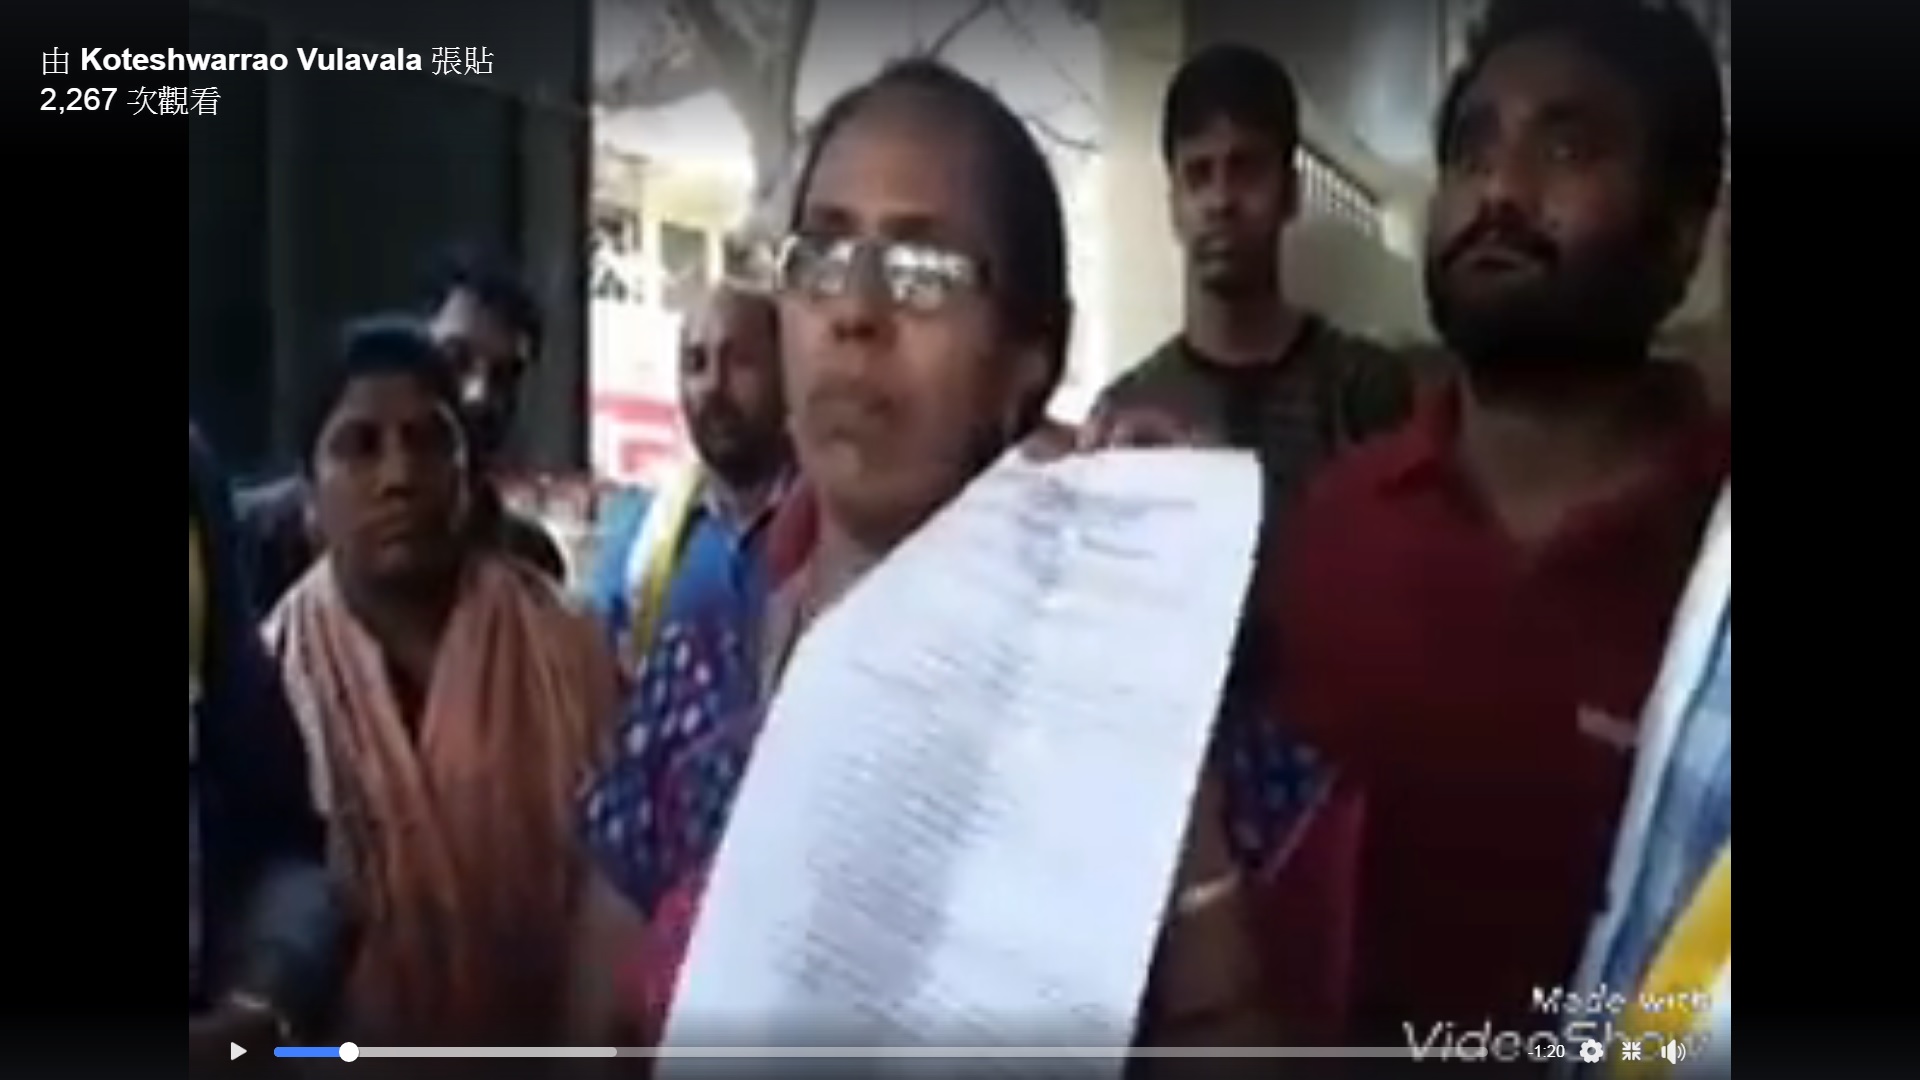 參與復活節遊行的印度教會姐妹出示警方的許可證明。